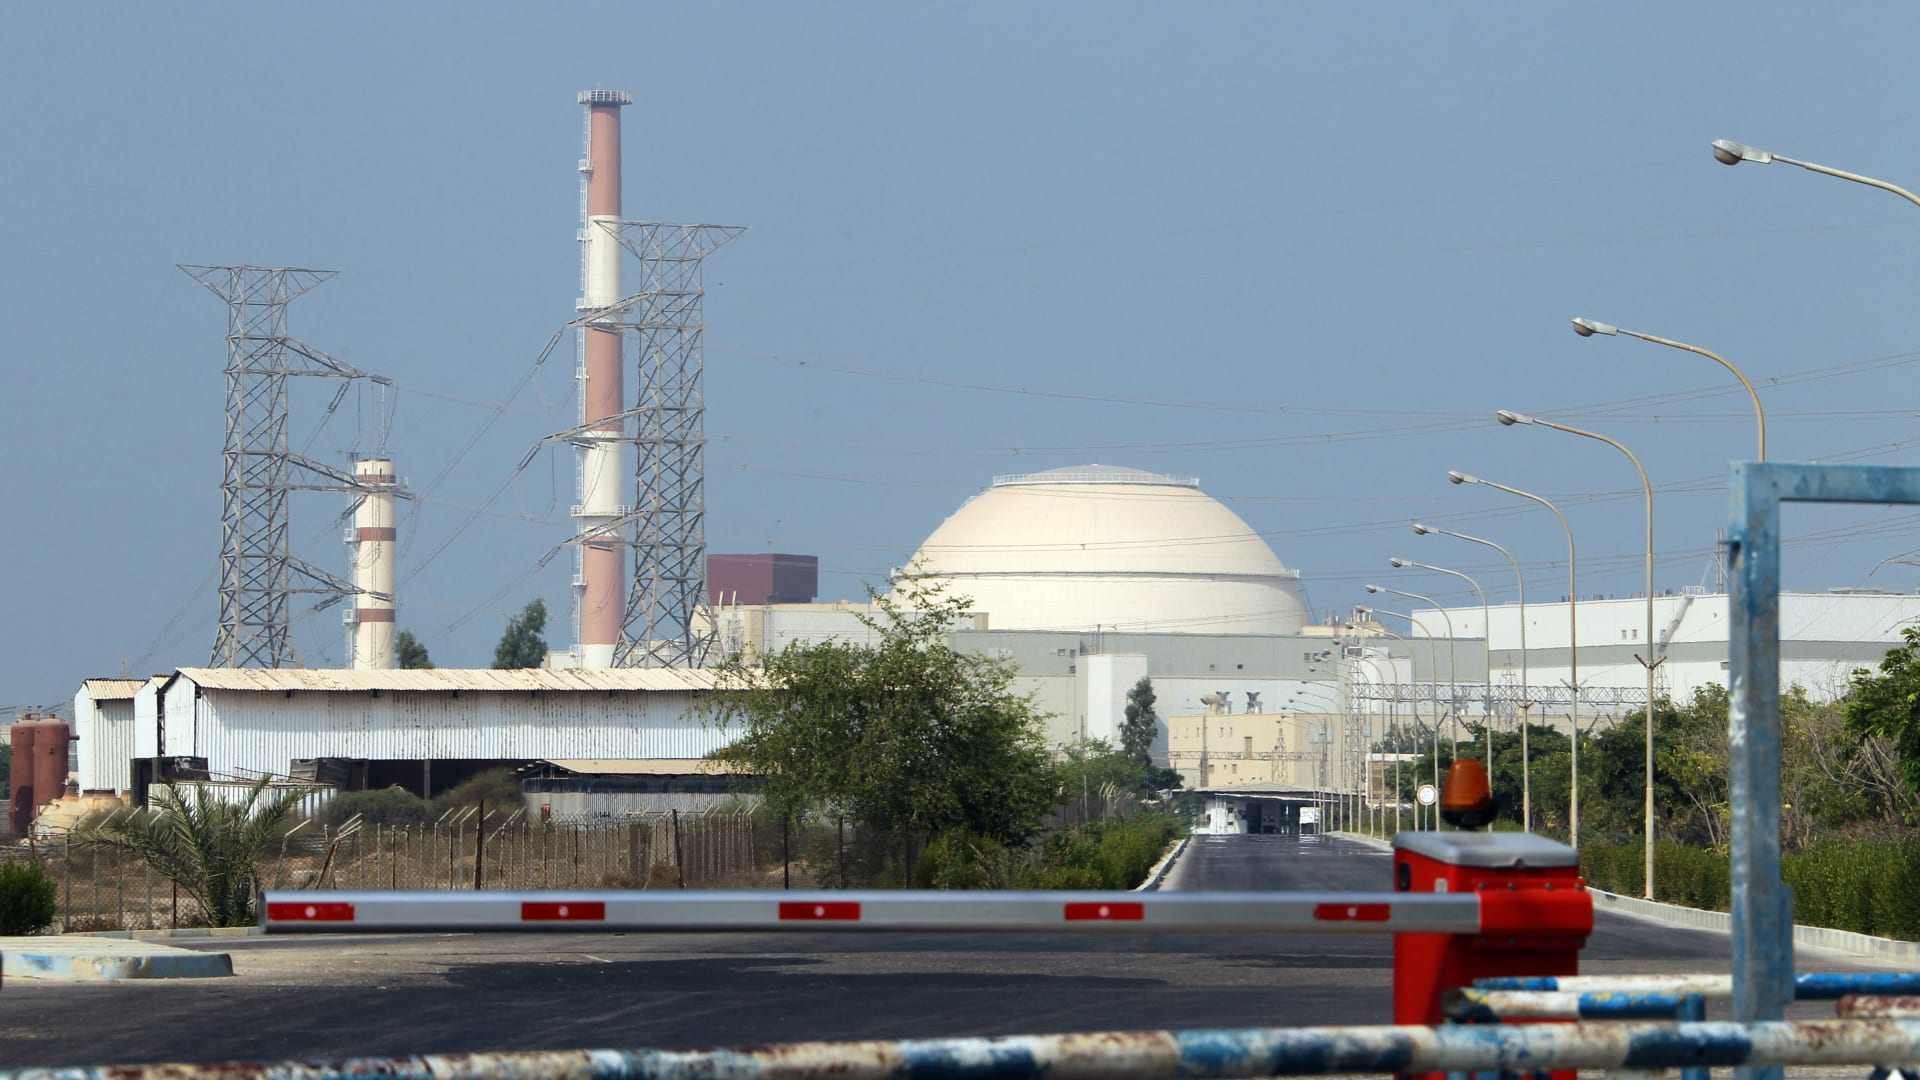 بعد تحذيرات أوروبية من تقدم برنامجها النووي.. إيران تغلق كاميرتي مراقبة داخل منشأة نووية